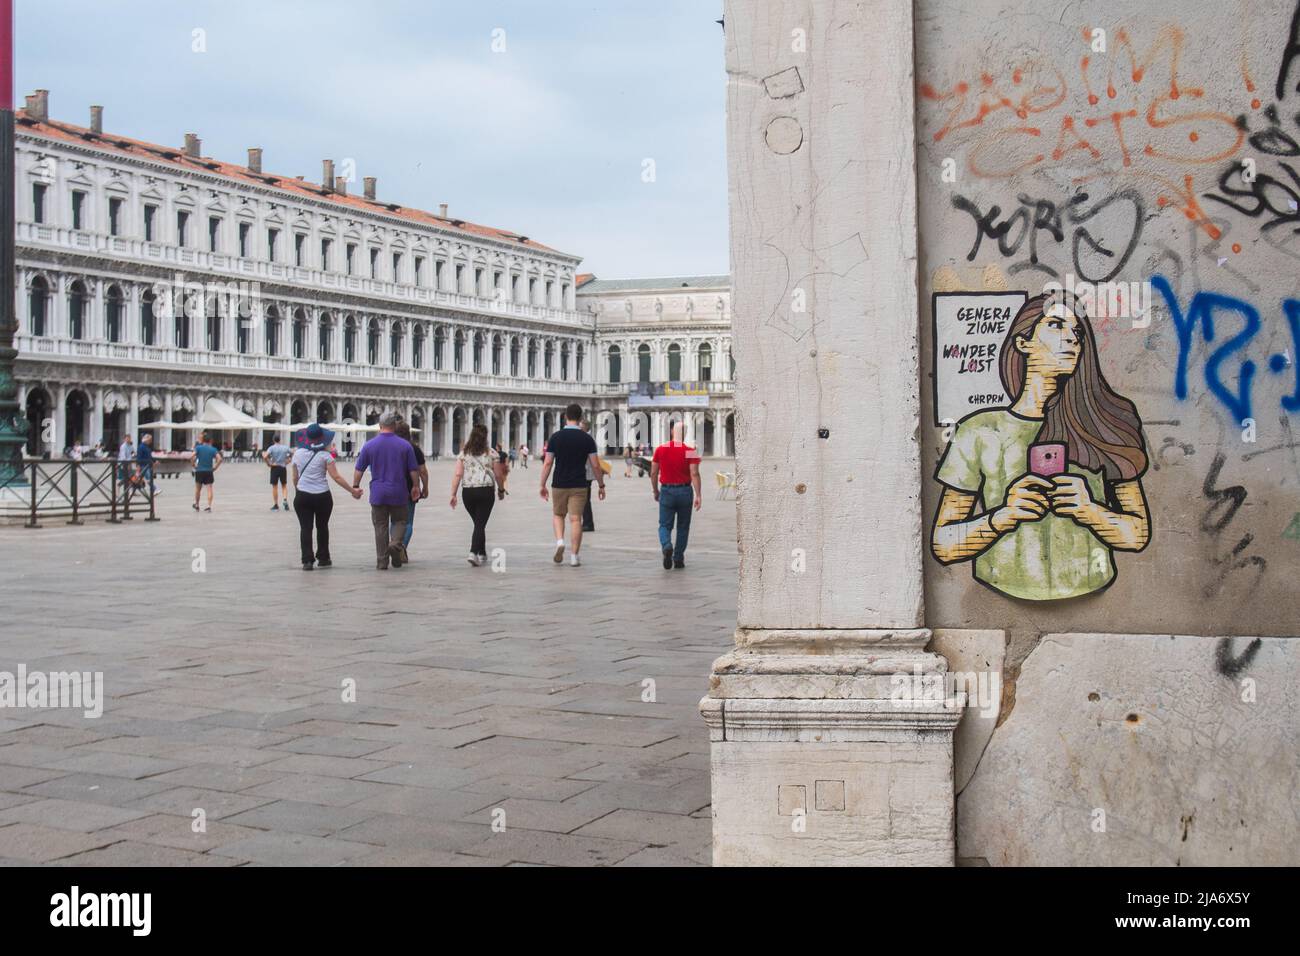 Venecia, en la plaza de San Marcos, un nuevo graffiti ha peraido en los últimos días. Foto de stock